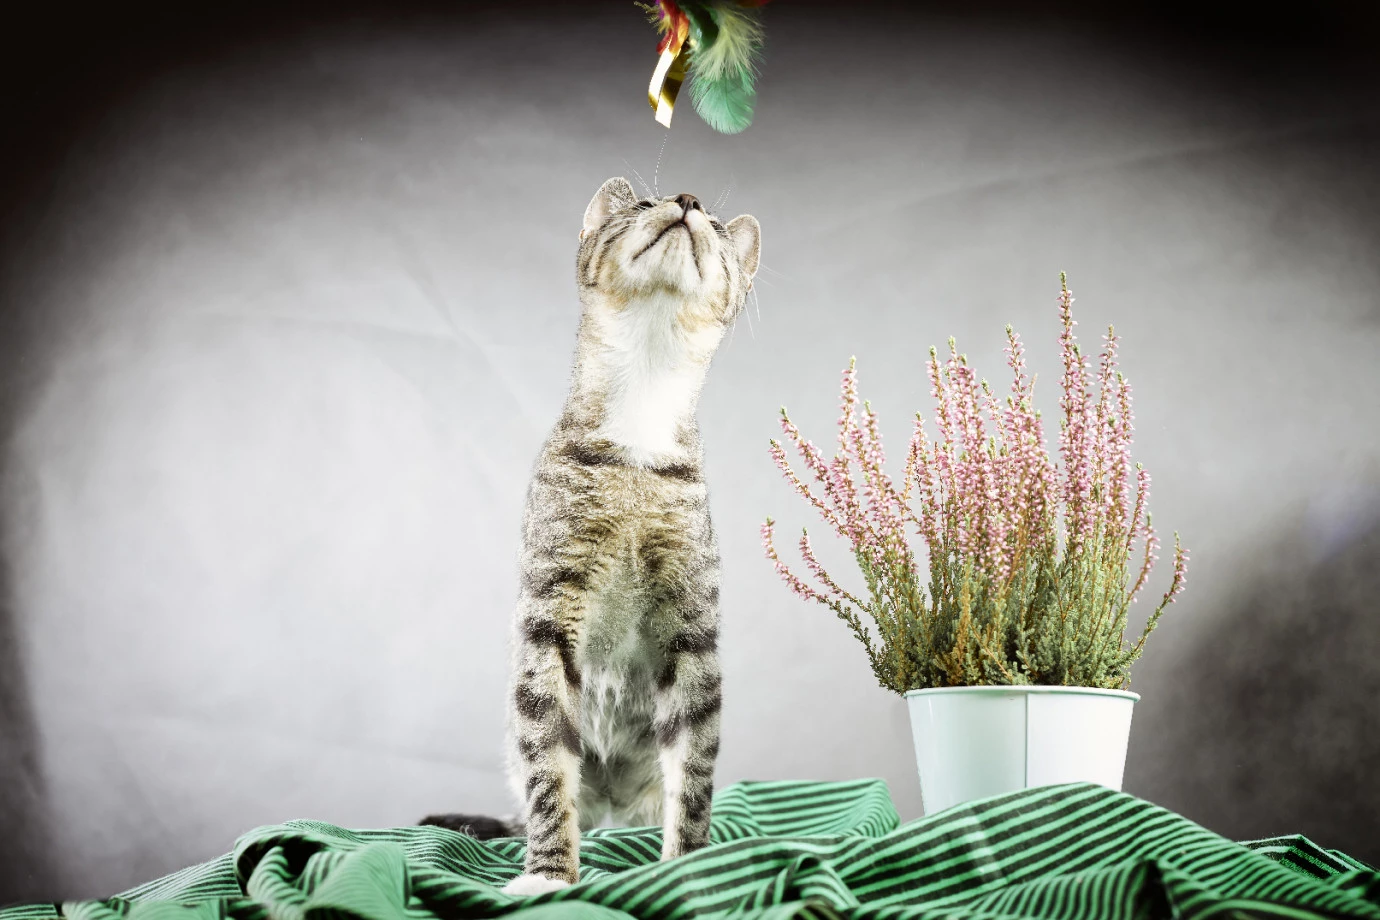 zdjęcia pelplin fotograf keenys-studio portfolio zdjecia zwierzat sesja zdjeciowa konie psy koty